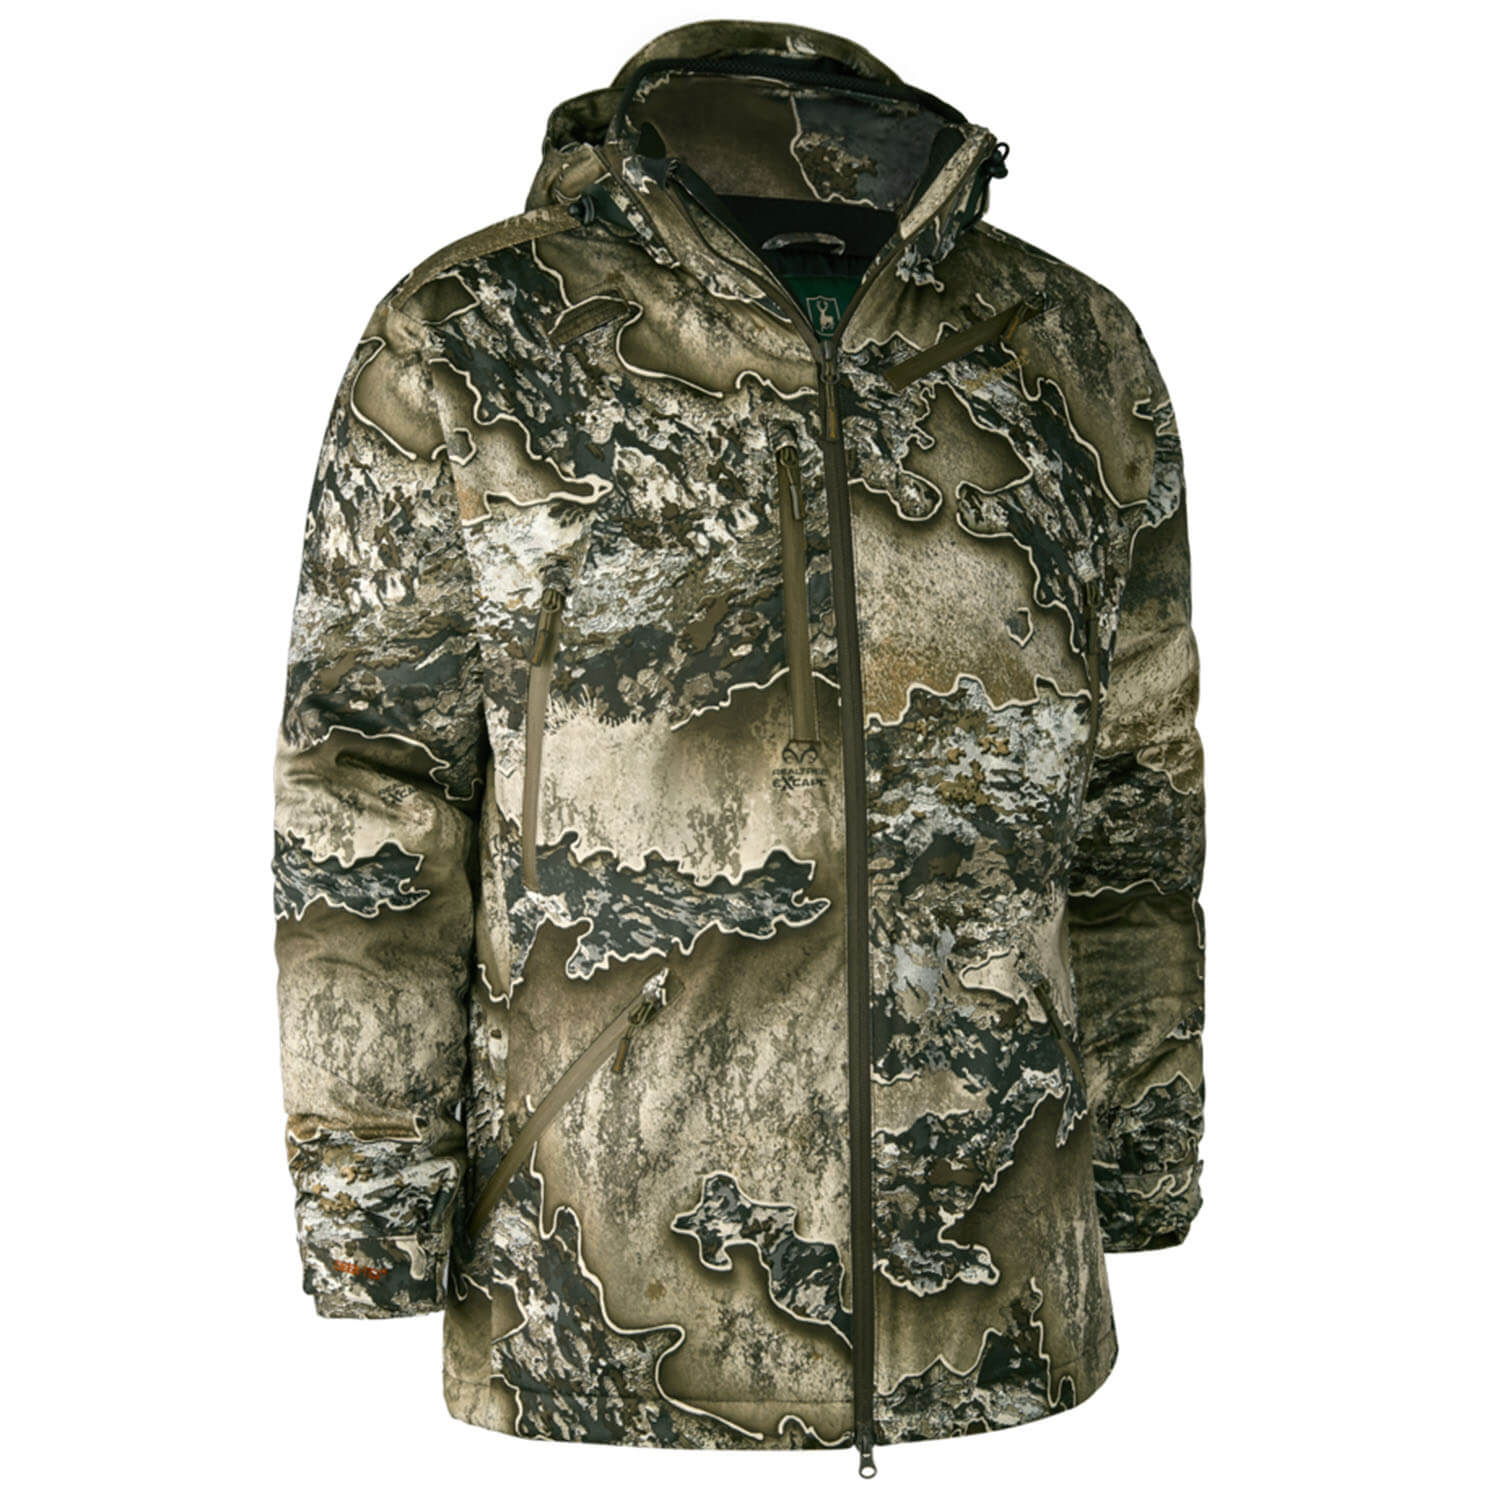 Deerhunter winter jacket Excape (realtree excape)